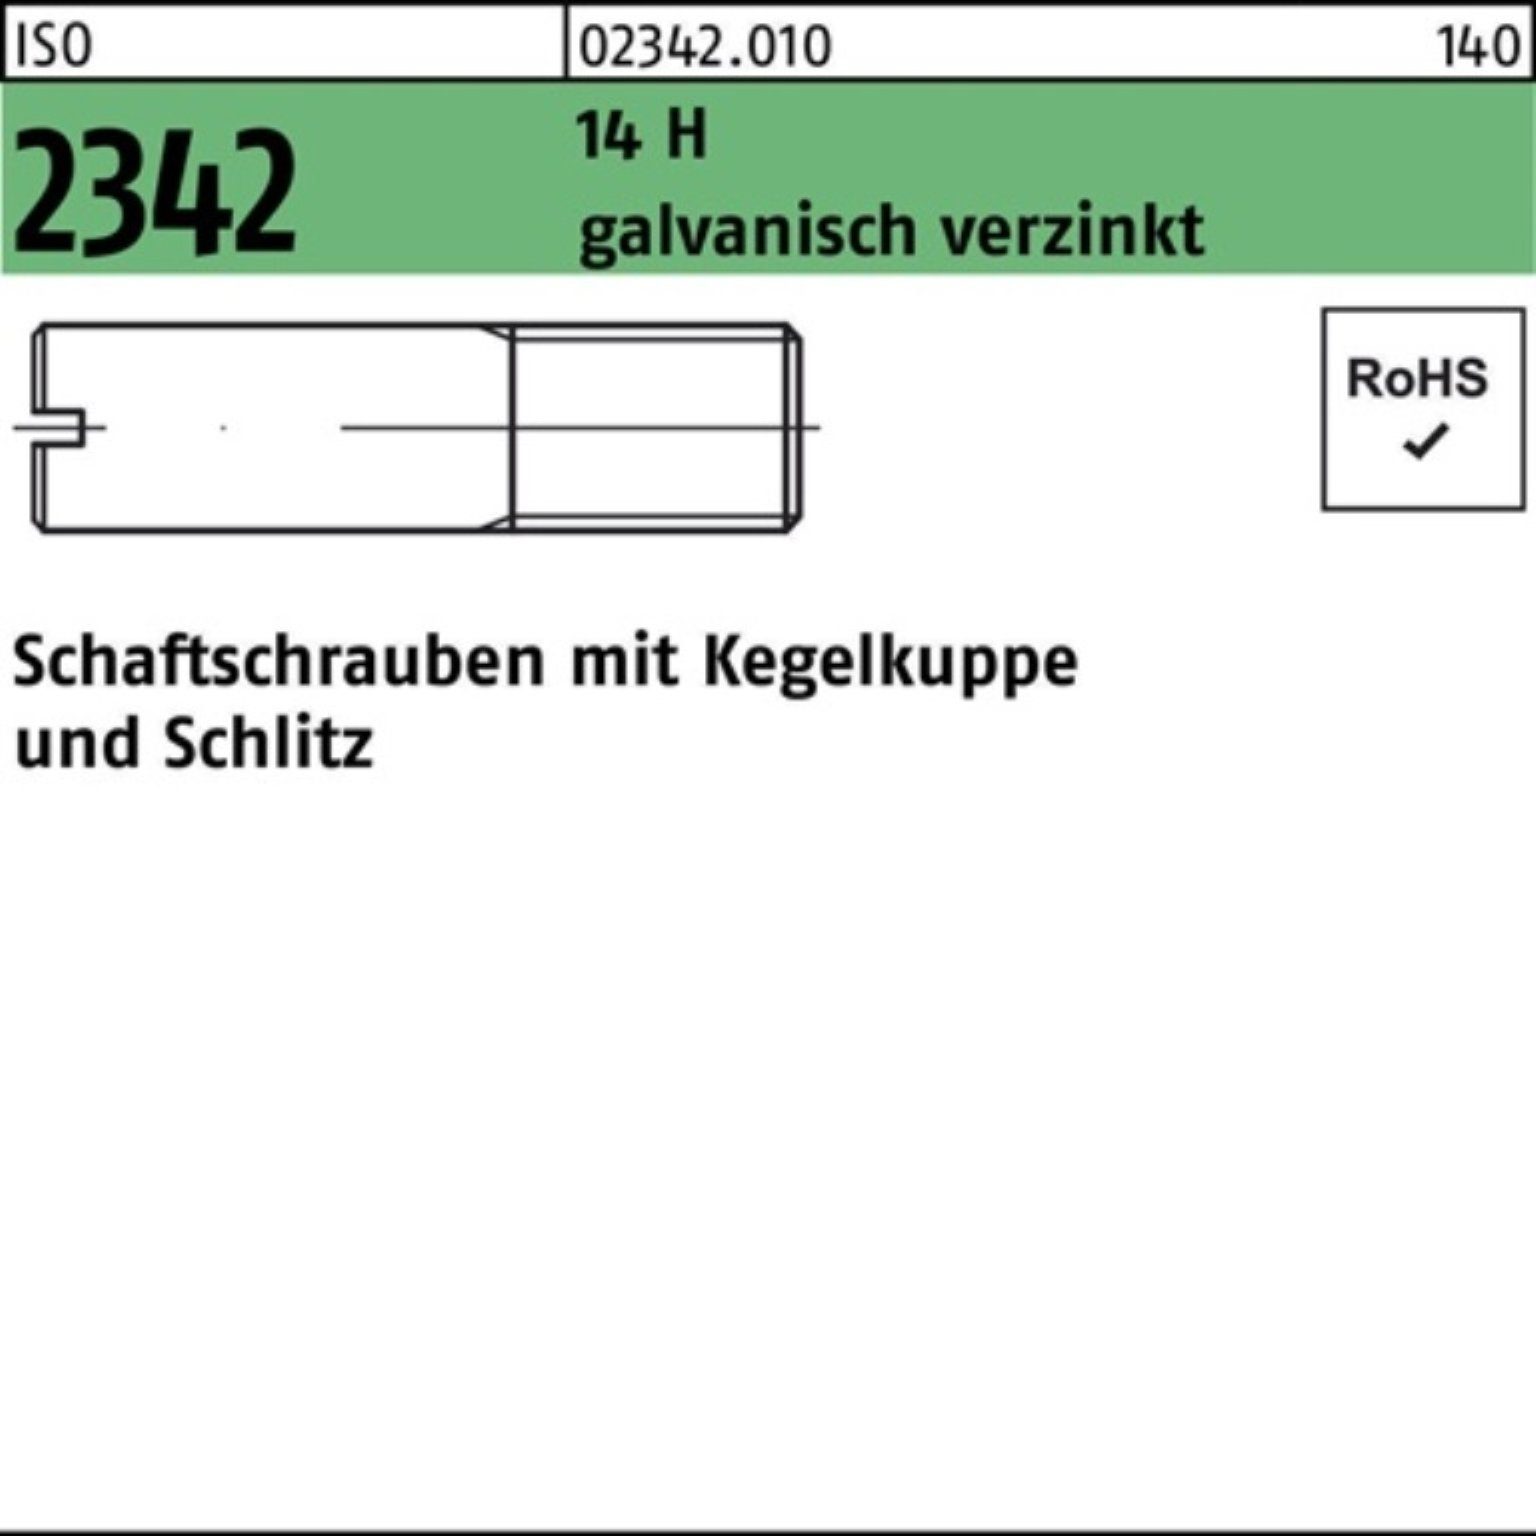 galv. M8x35 Reyher Kegelkuppe/Schlitz Schaftschraube Pack 14 H 2342 ISO 100er Schraube